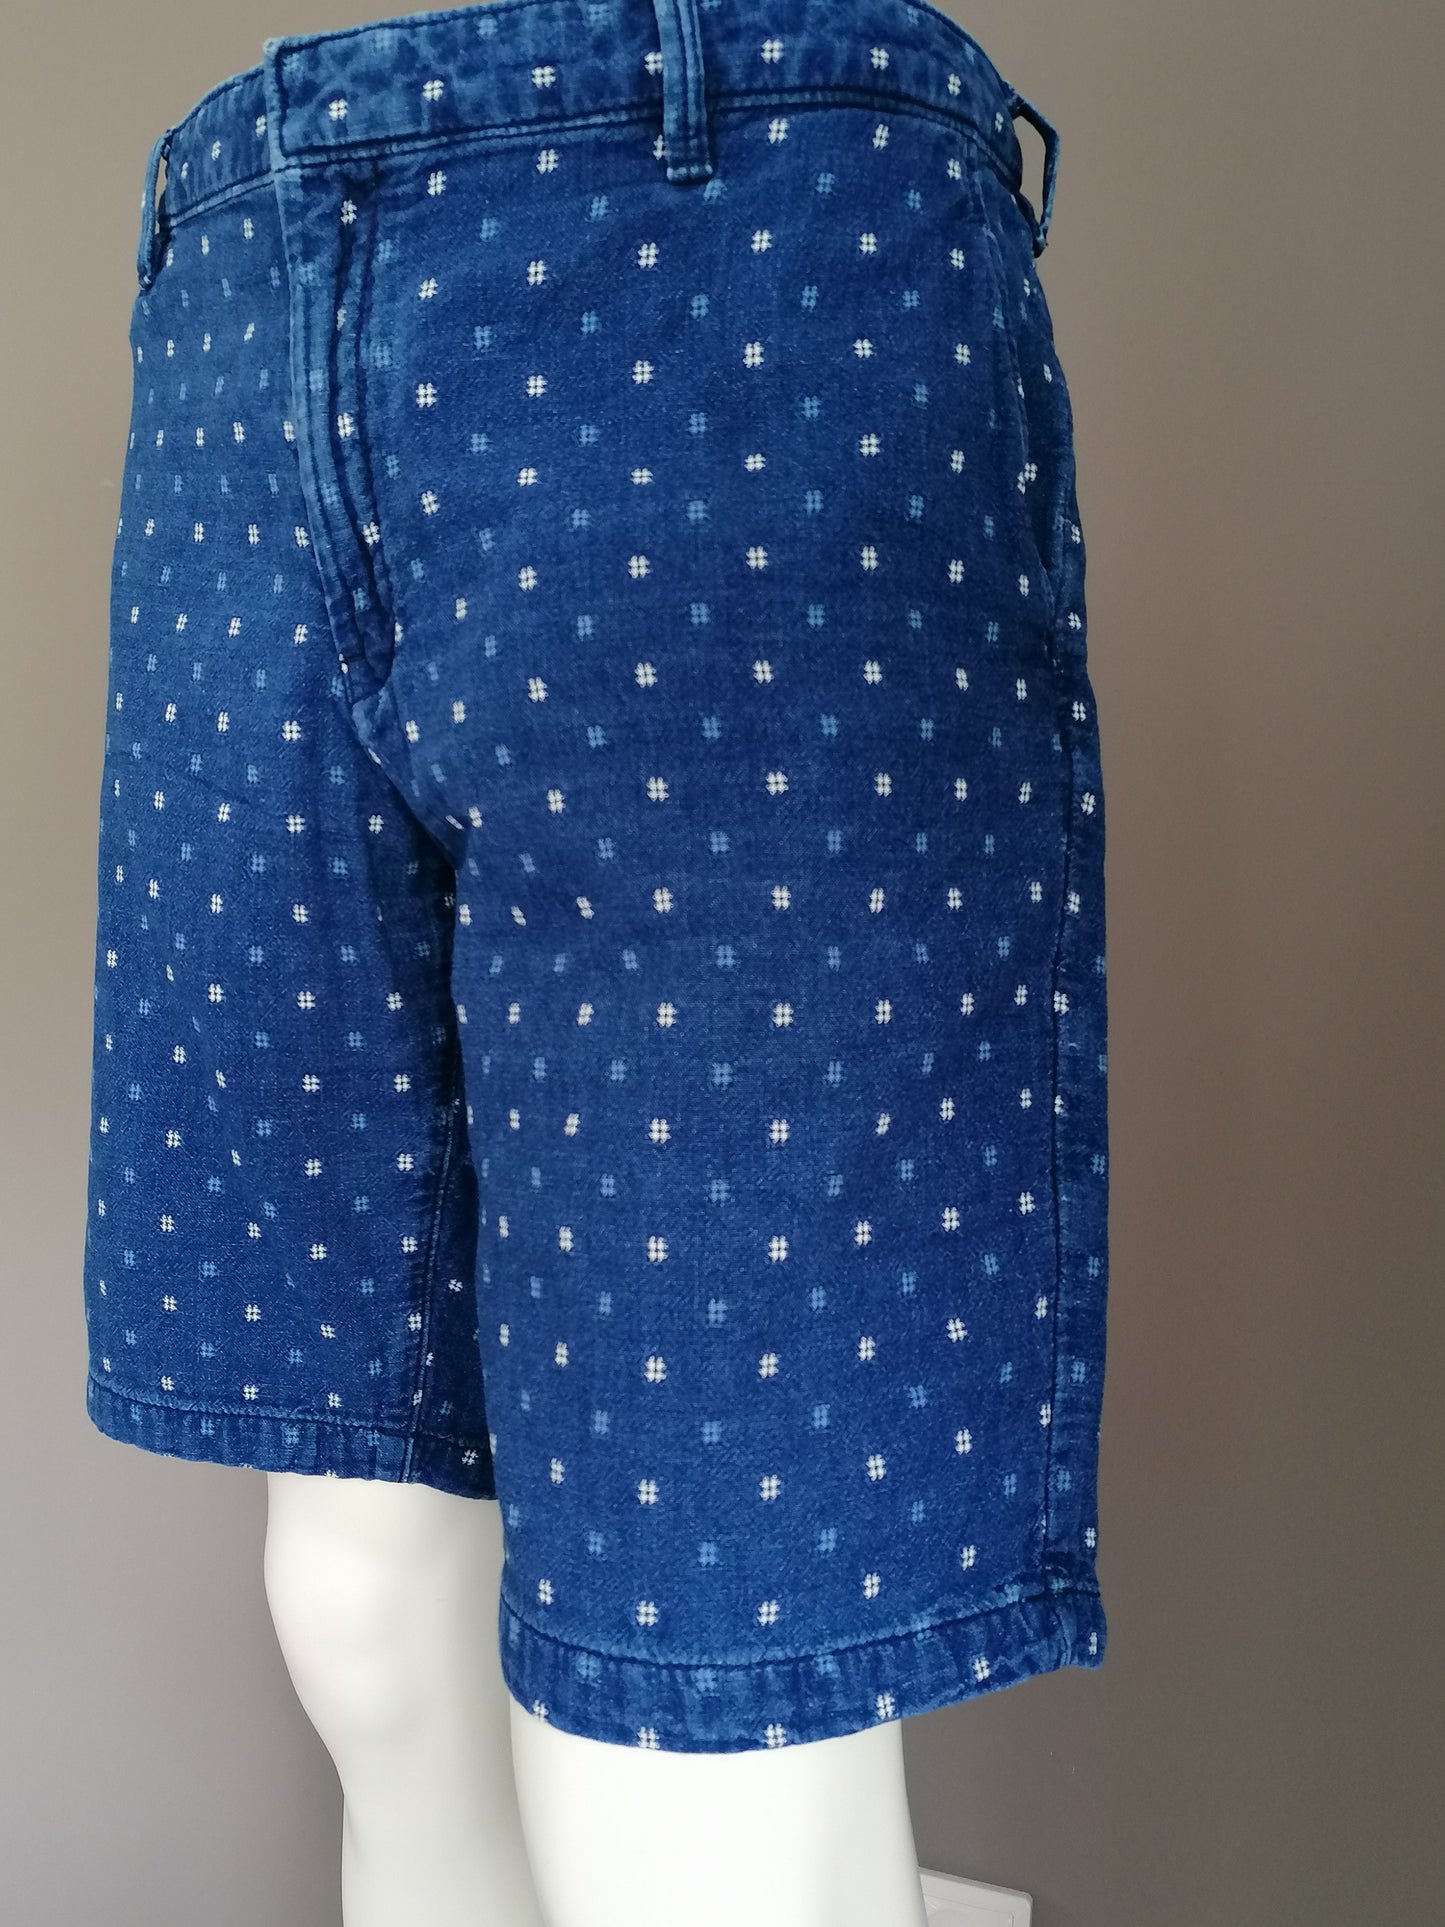 Dressmann Shorts. Motivo blanco azul. Tamaño XXXL / 3XL / 60.